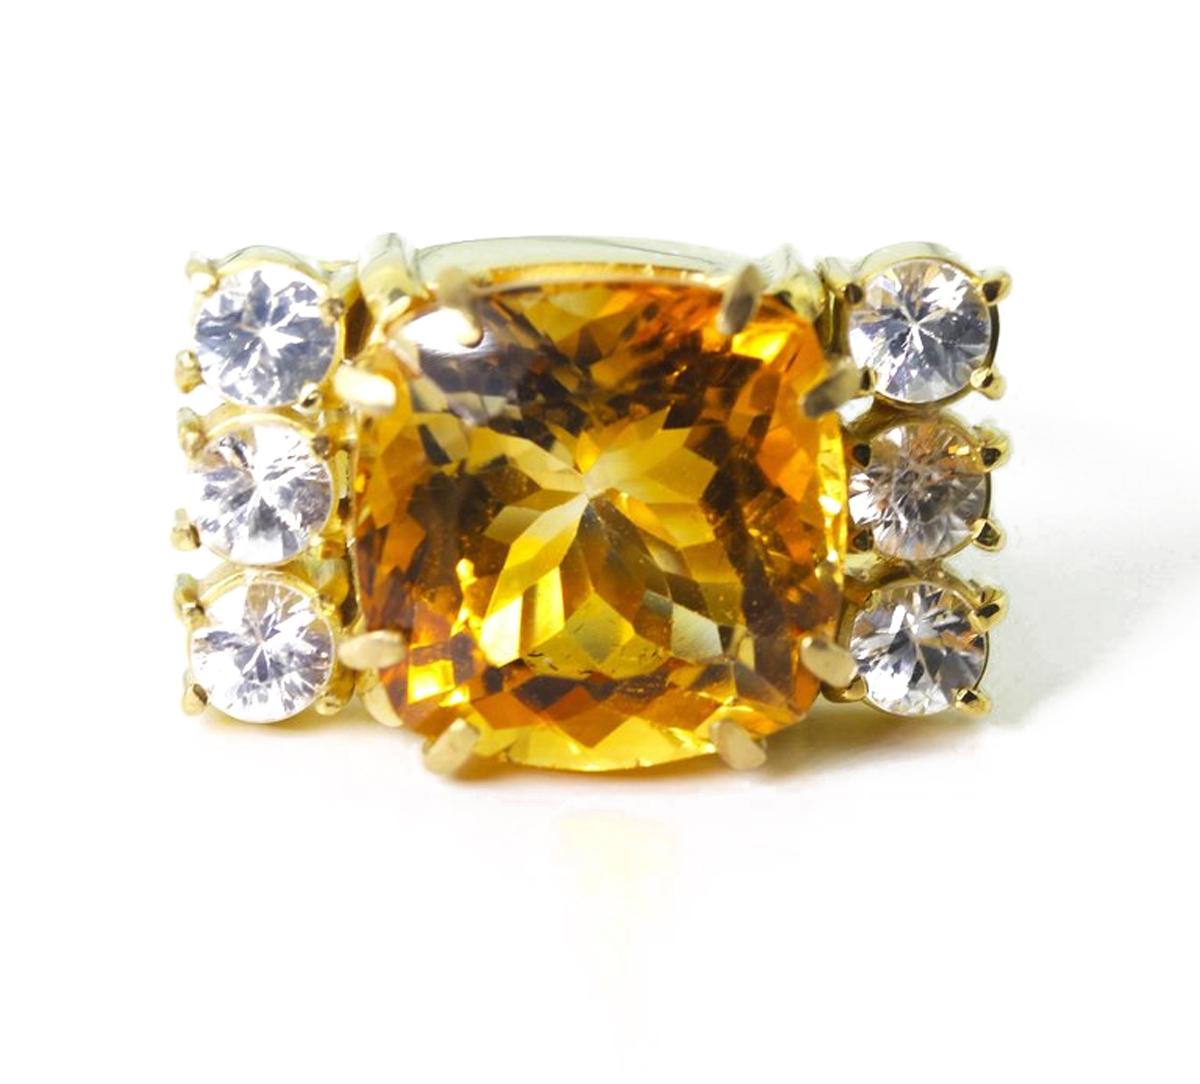 Dieser funkelnde, mehrfarbig blitzende, goldgelbe 11,5-Karat-Citrin (13,8 mm x 13,8 mm) ist mit ca. 1,2 Karat strahlend weißen Saphiren in einem einzigartigen handgefertigten 18-Karat-Gelbgold gefasst. Der Ring ist eine Größe 7 (sizable).  Dies ist